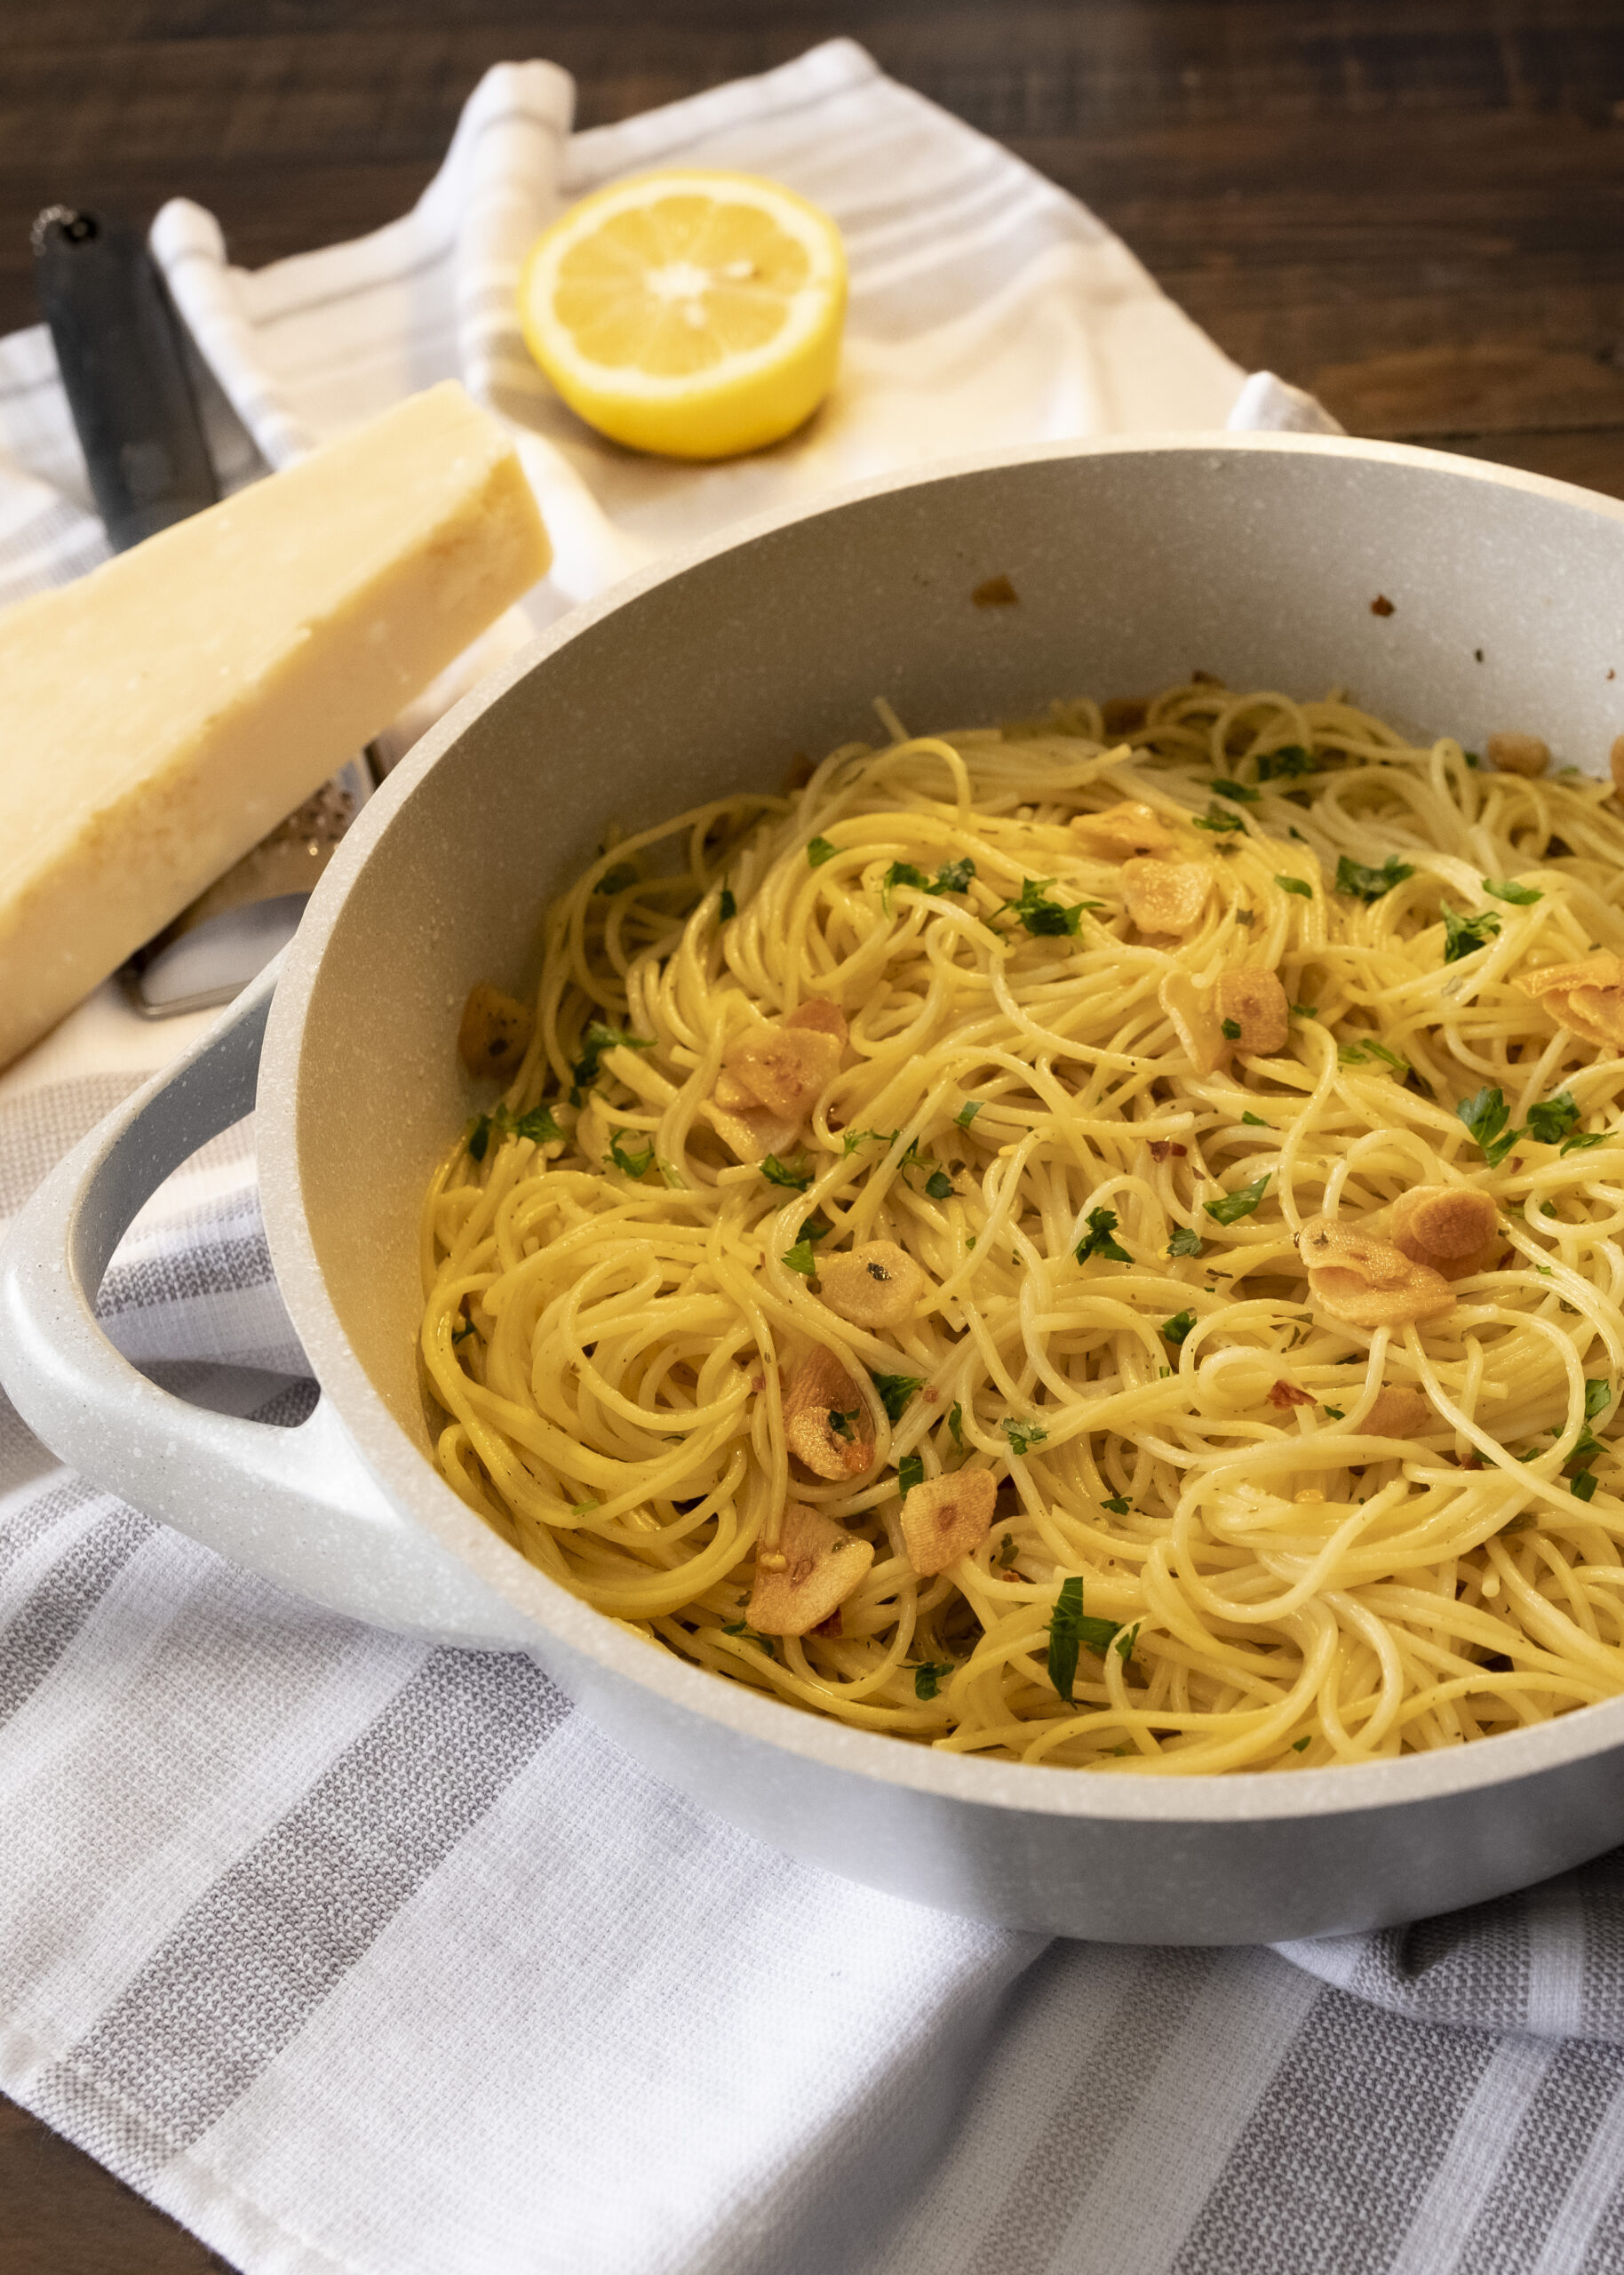 spaghetti with garlic oil and chili flake recipe